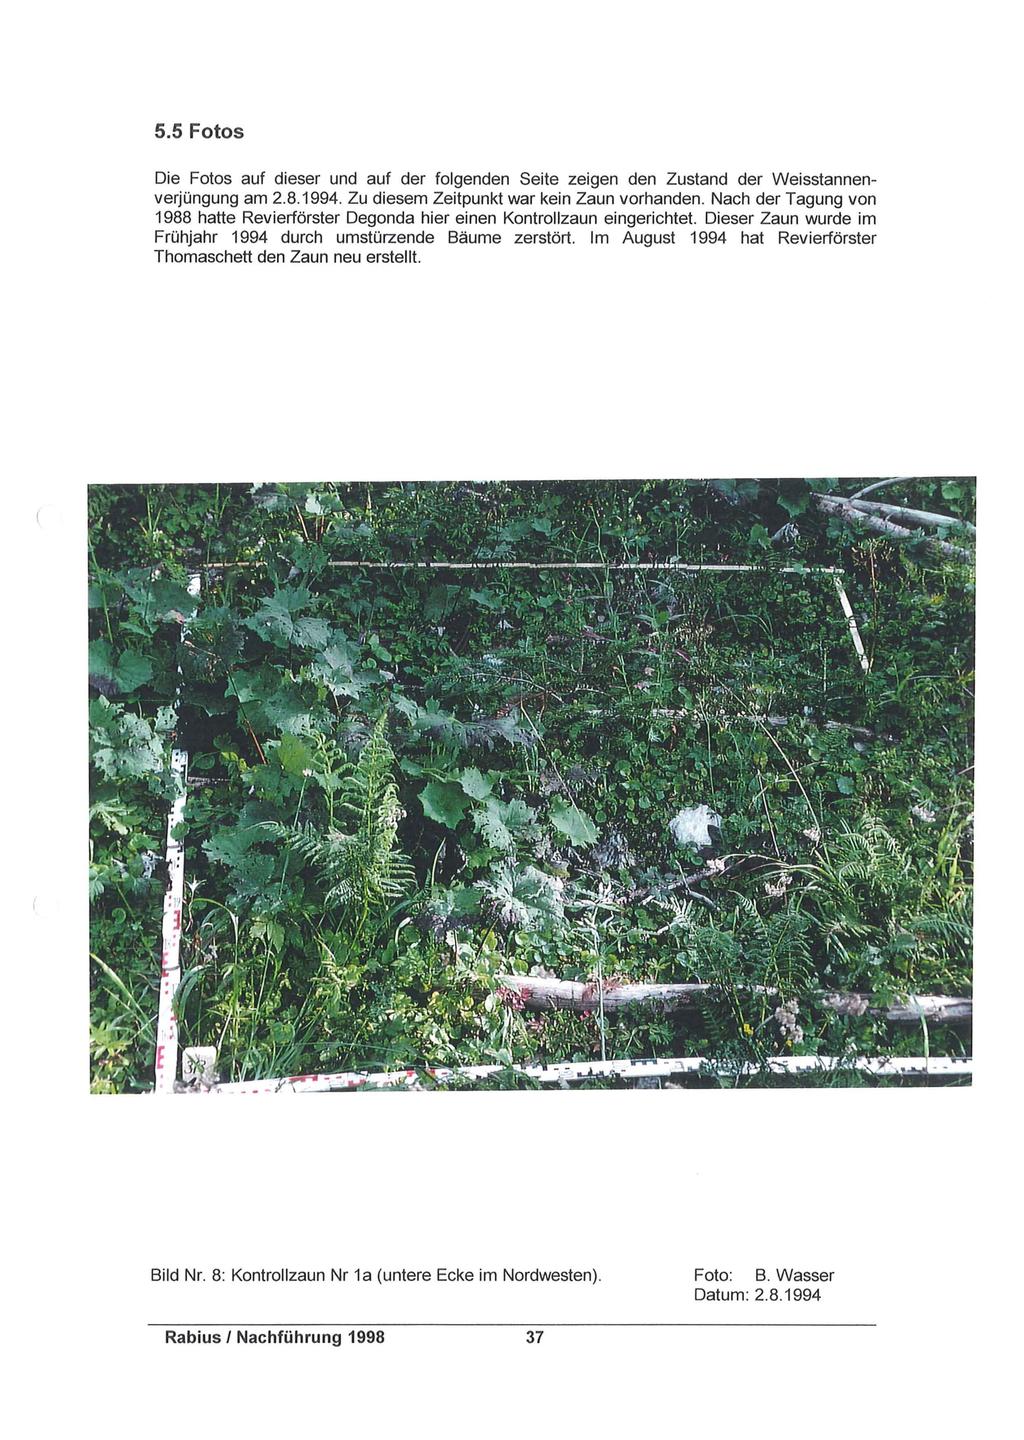 5.5 Fotos Die Fotos auf dieser und auf der folgenden Seite zeigen den Zustand der Weisstannenverjüngung am 2.8.1994. Zu diesem Zeitpunkt war kein Zaun vorhanden.